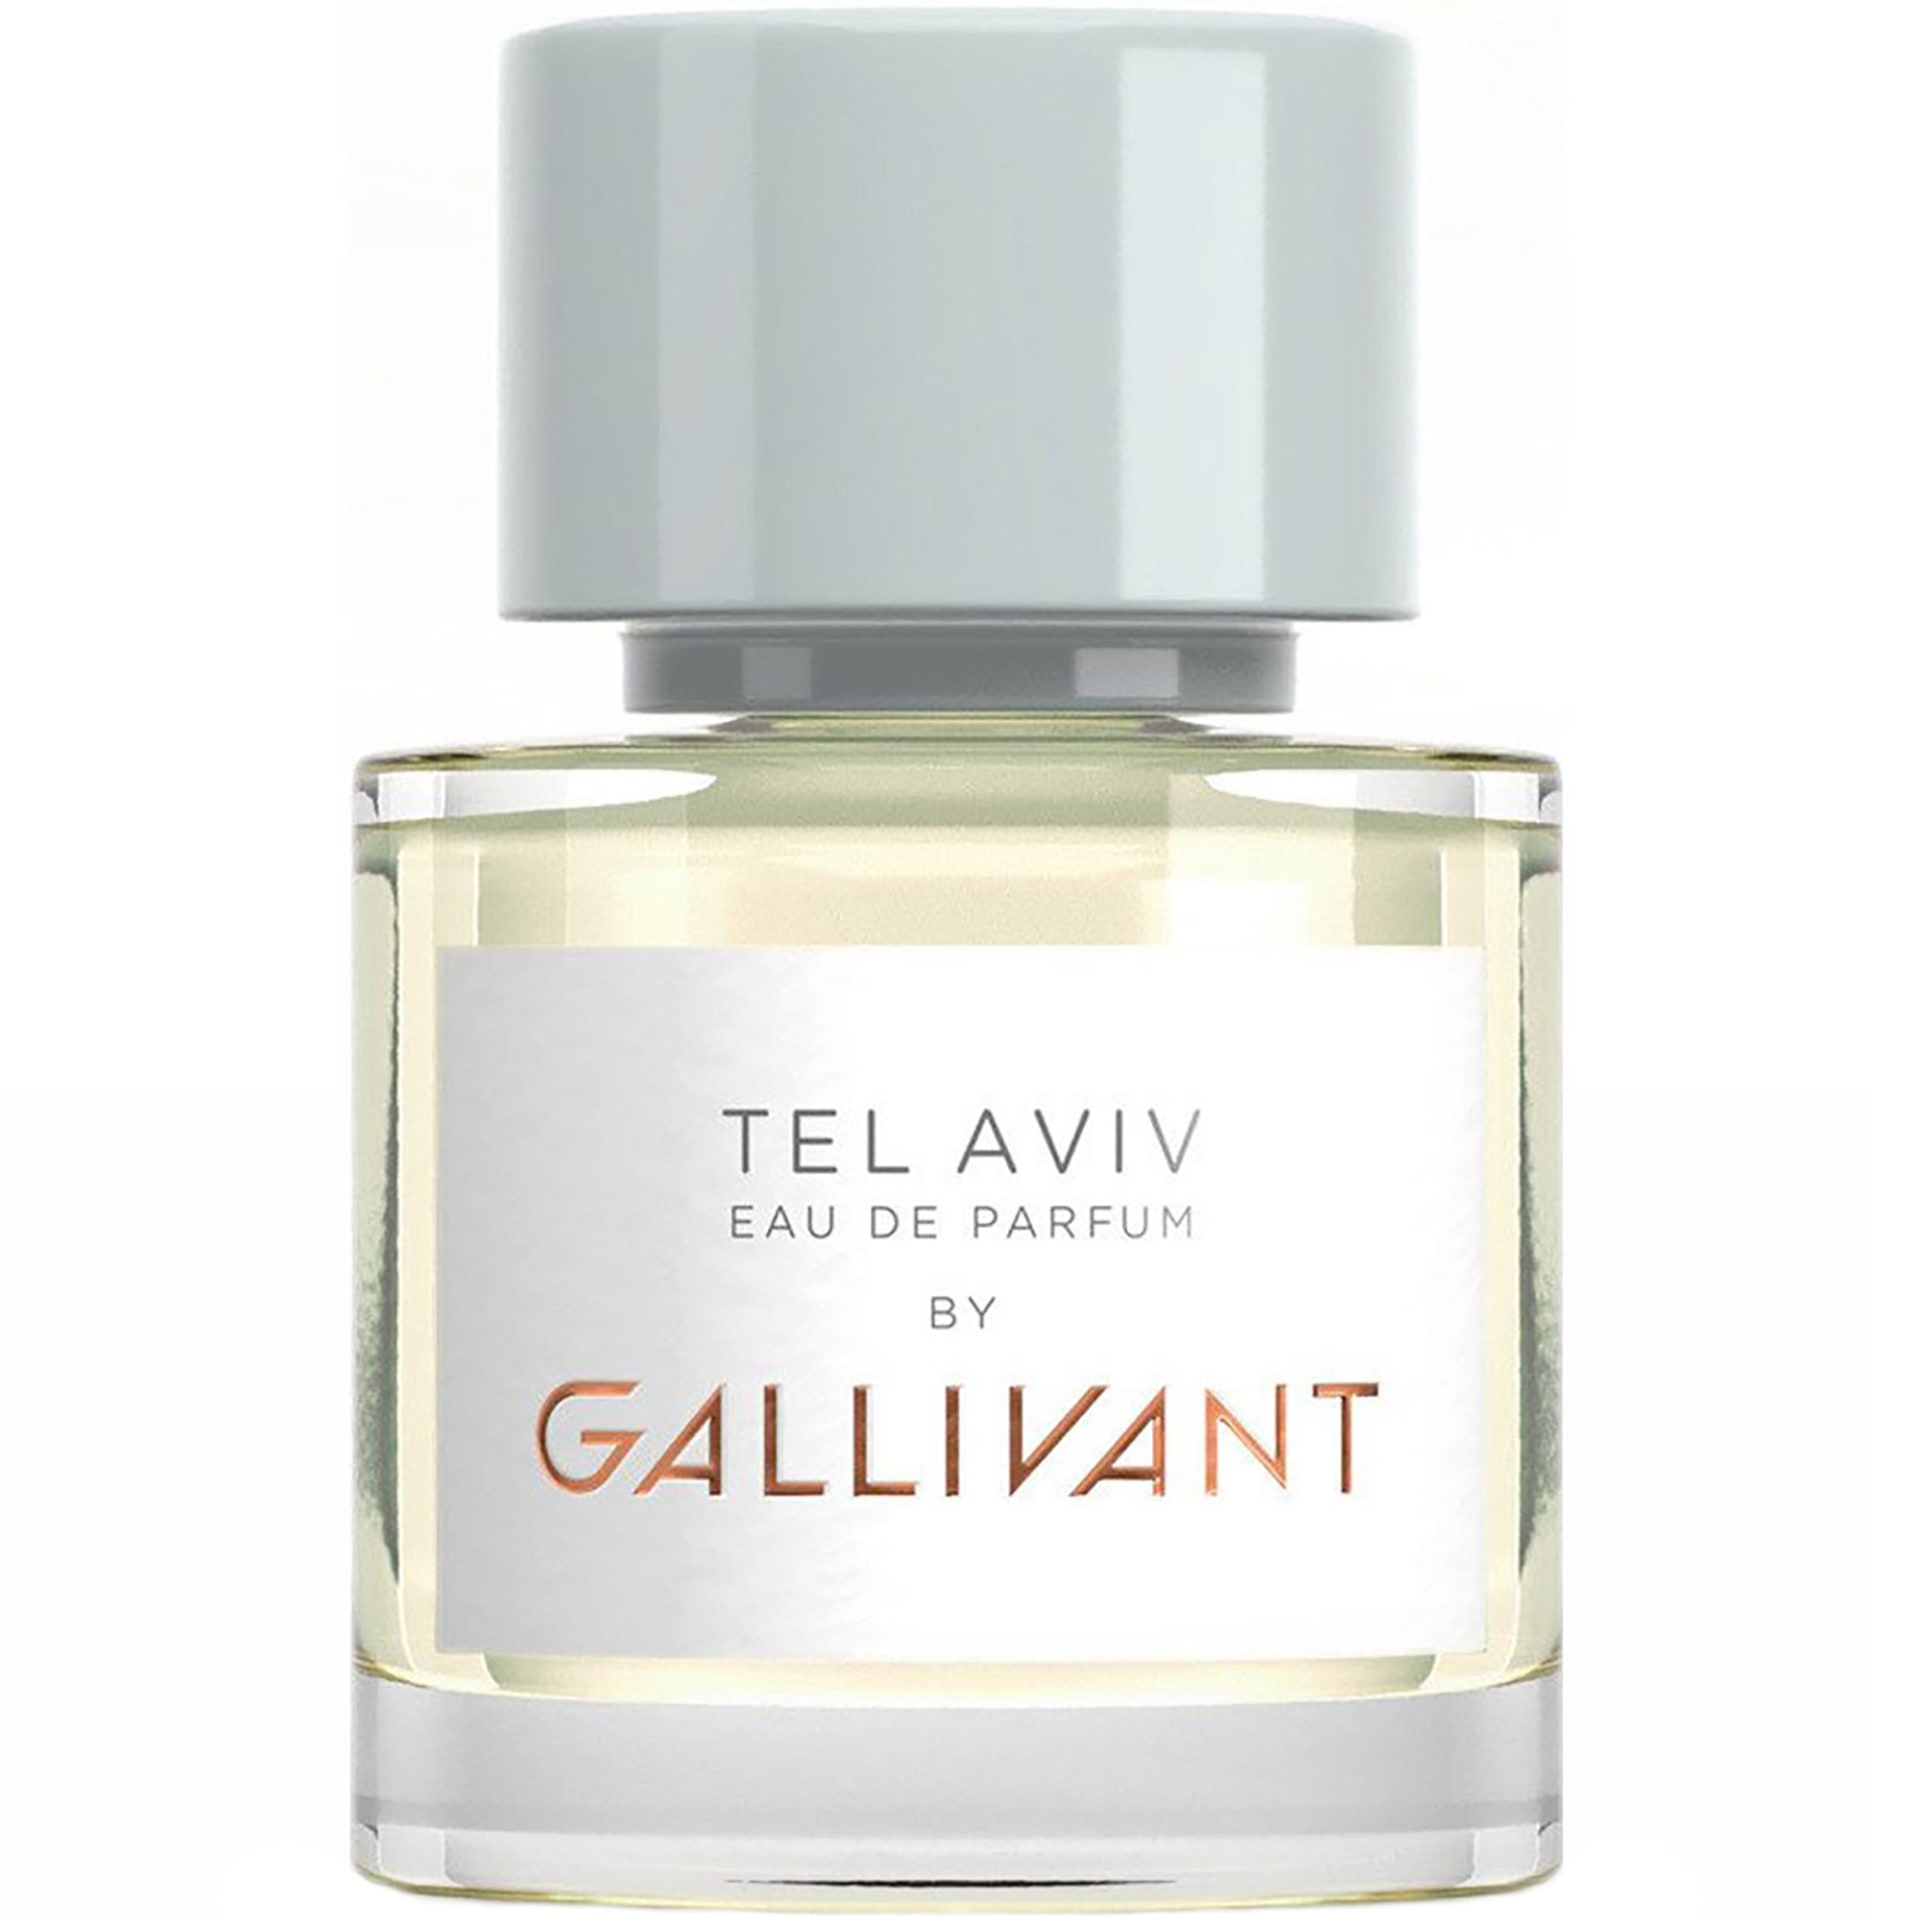 gallivant-tel-aviv